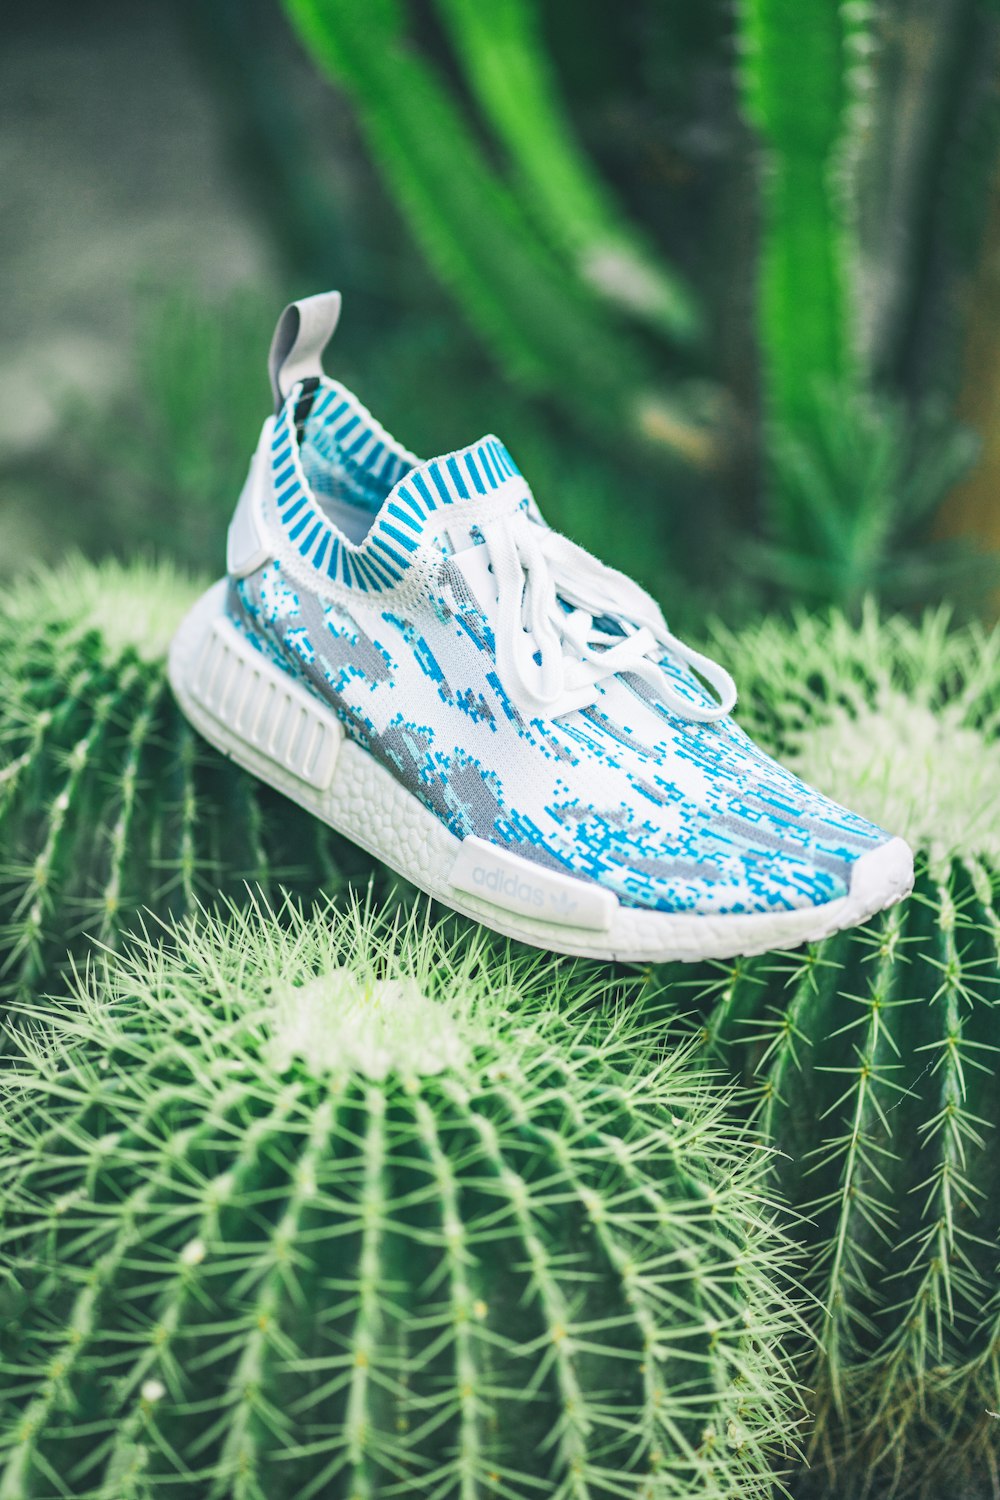 Foto zum Thema Weiß-blauer adidas NMD Sneaker auf Kaktuspflanze –  Kostenloses Bild zu Kanada auf Unsplash